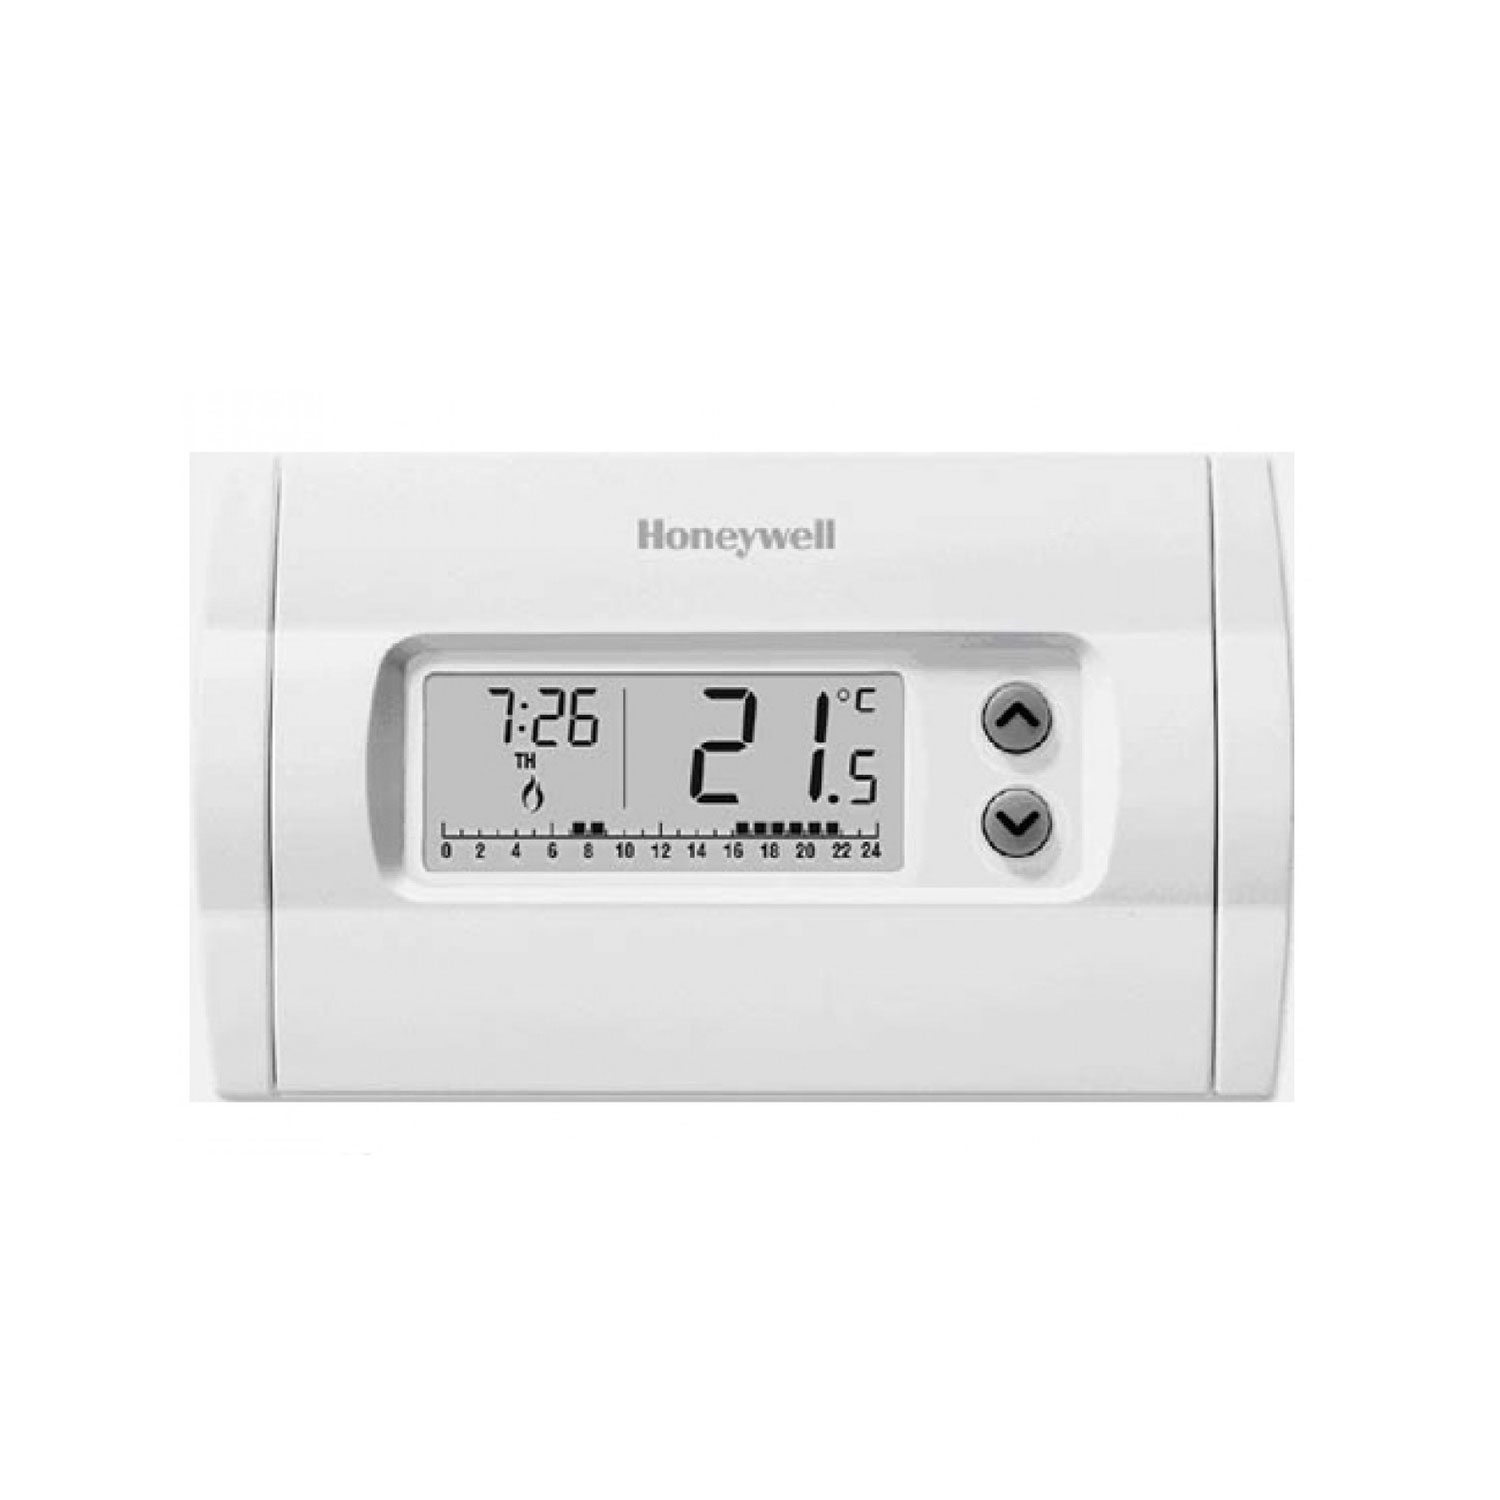 Crono termostato Honeywell cm507 Home J programmazione settimana 2 livelli